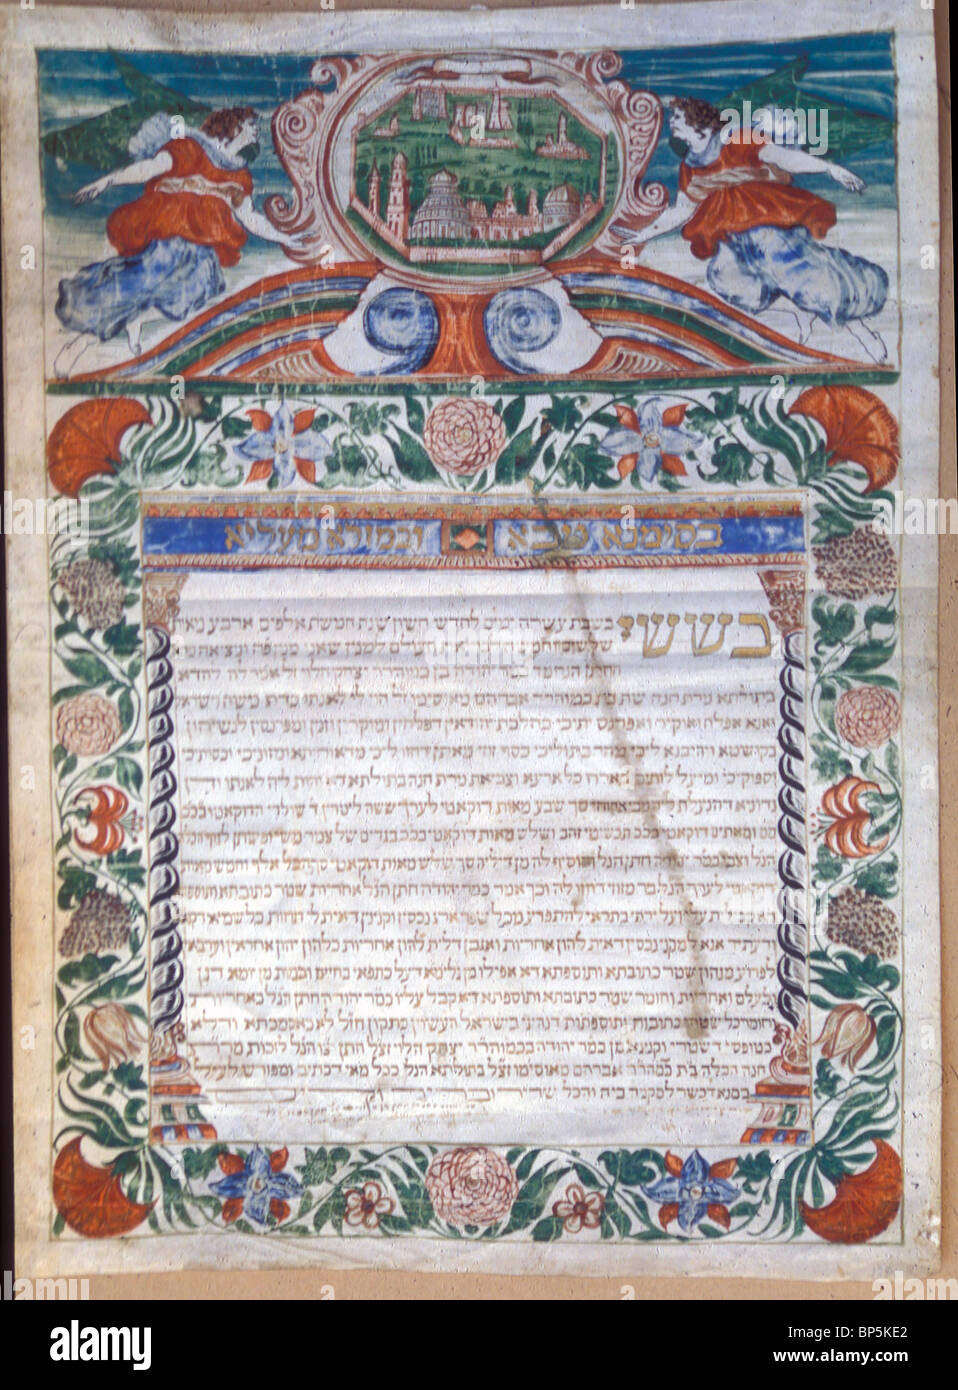 KETUBBAH - contratto di matrimonio normalmente scritto su pergamena decorata indicando il marito non ha obblighi verso sua moglie. VENEZIA Foto Stock